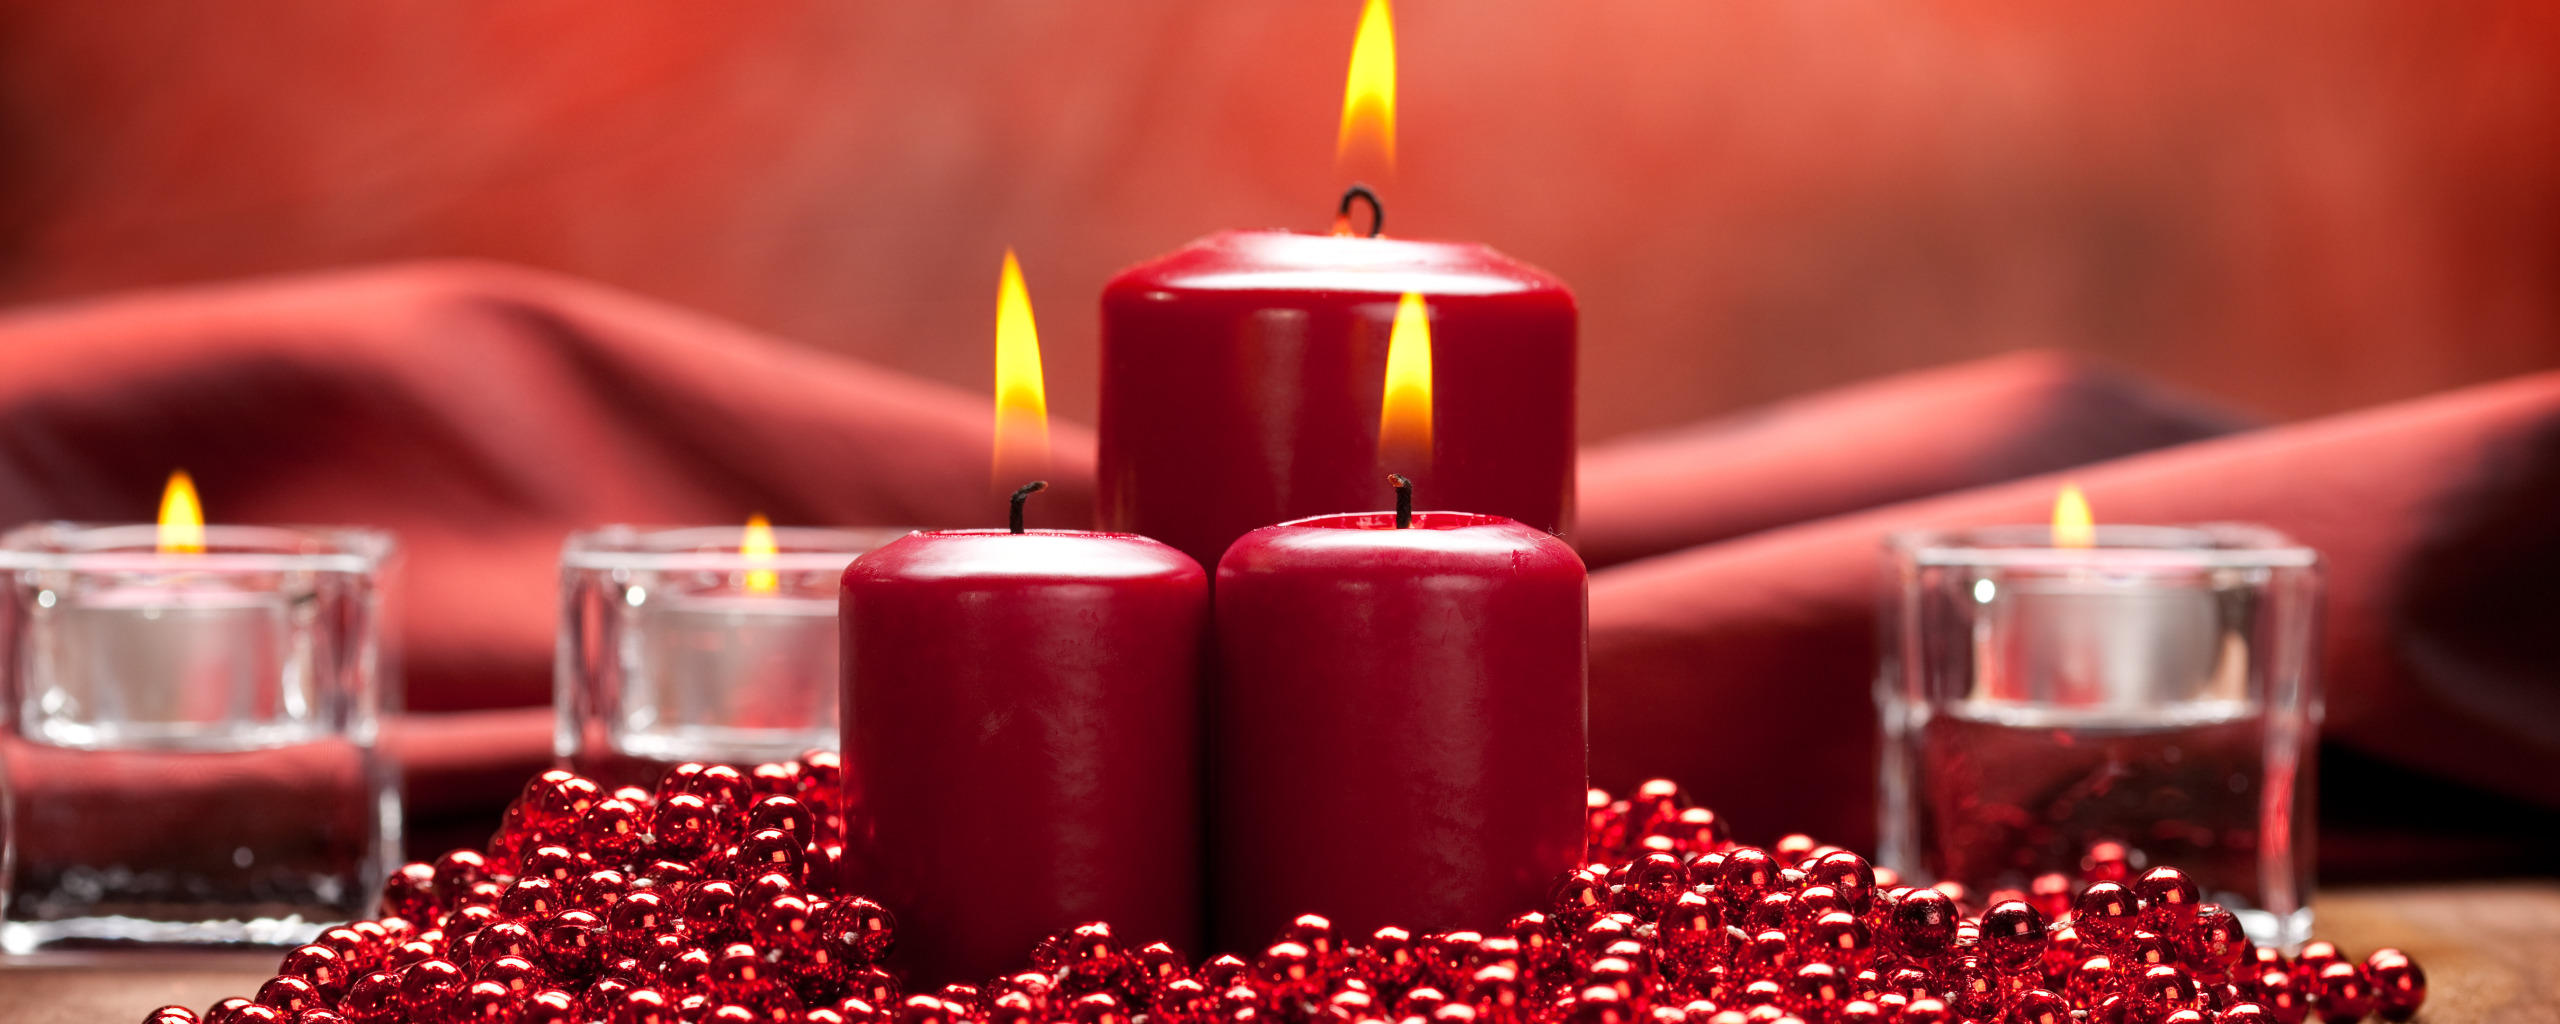 Красная свеча. Красные церковные свечи. Две красные свечи. Механика на красных свечах.